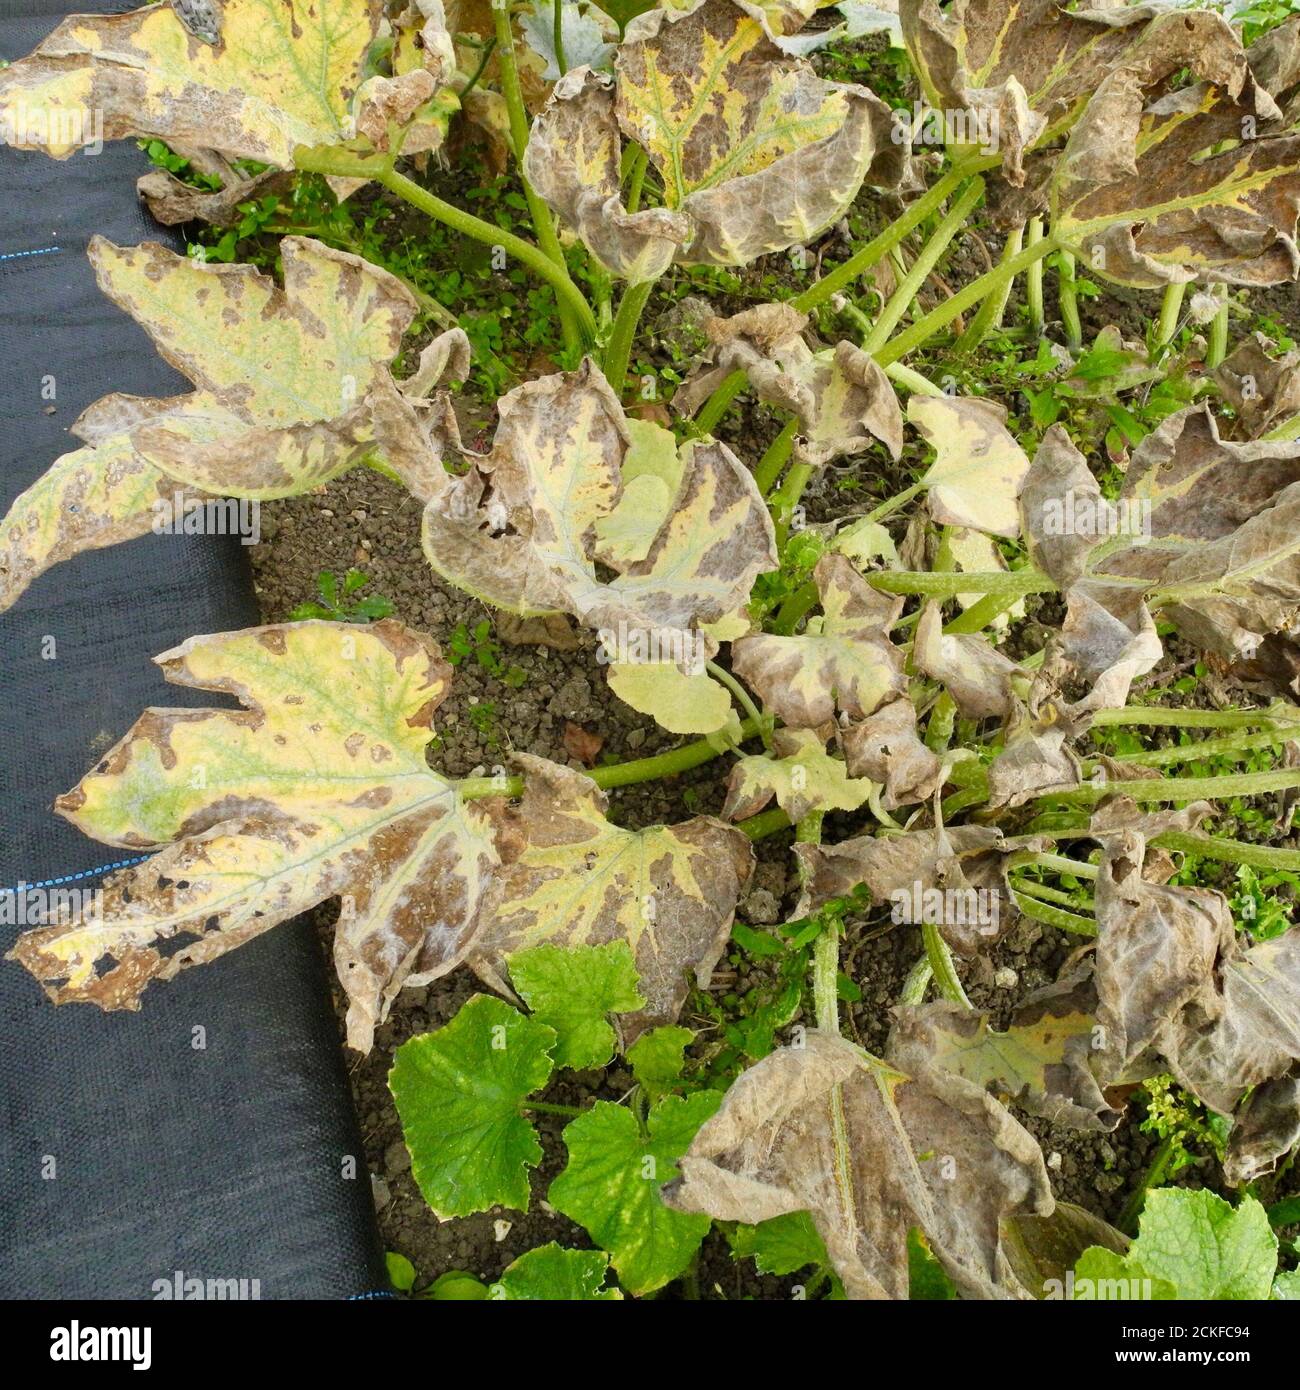 Cette image montre le stade précoce du mildiou poudreux affectant les feuilles d'une PLANTE de COUGETTE. Le mildiou poudreux est une maladie fongique qui affecte un large éventail de plantes. Les maladies de l'oïdium sont causées par de nombreuses espèces de champignons dans l'ordre des Erysiphales, Podosphaera xanthii étant la cause la plus couramment signalée. Commune sur LES CITROUILLES CONCOMBRES COURGETTES et autres membres de la famille DES COURGES. Banque D'Images